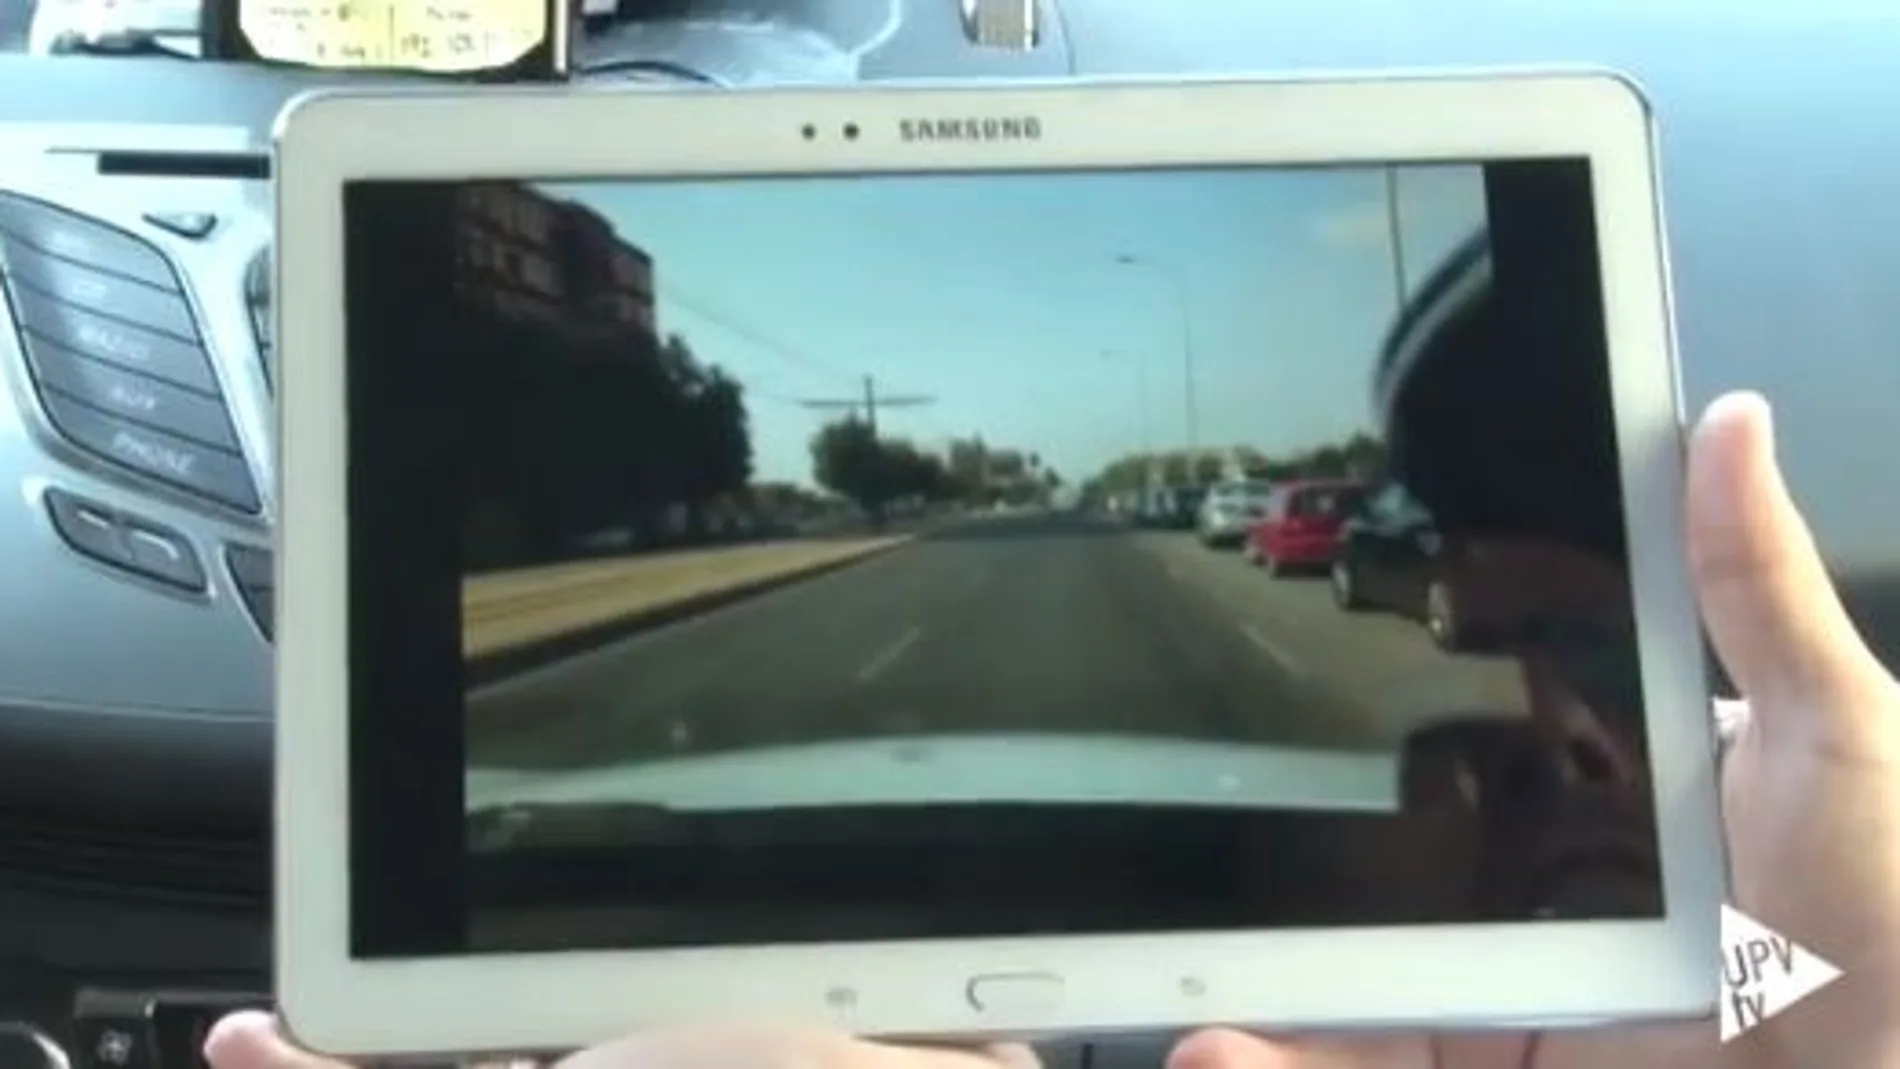 La aplicación recibe y muestra en tiempo real en la tableta o smartphone el vídeo de la carretera tal y como es observado desde uno de los vehículos que nos precede.